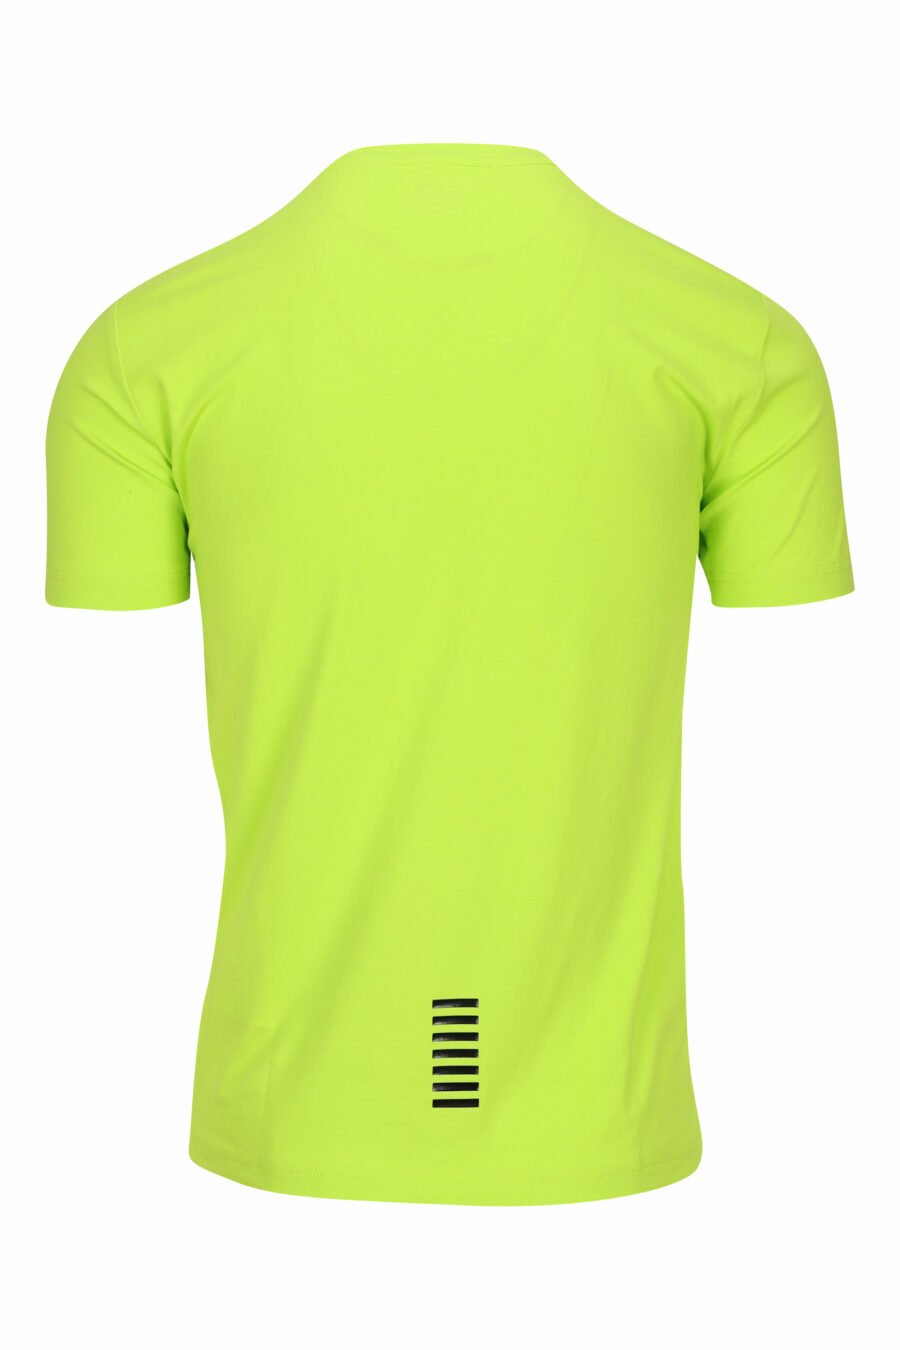 T-shirt vert citron avec mini logo "lux identity" en caoutchouc - 8058947458301 1